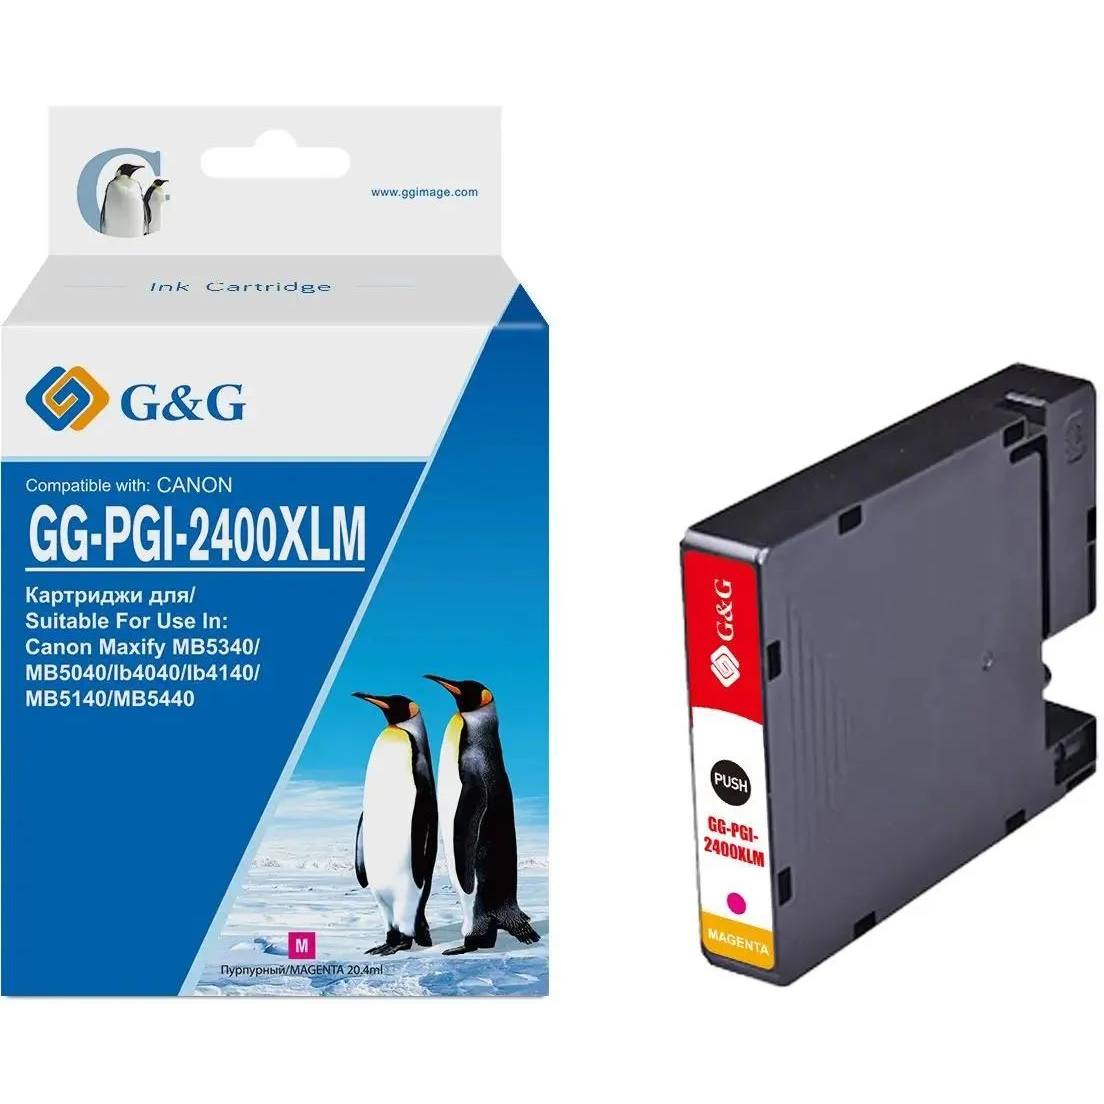 Картридж струйный G&G GG-PGI-2400XLM PGI-2400XL M пурпурный (20.4мл) для Canon Maxify iB4040/iB4140/МВ5040/MB5140/МВ5340/MB5440 картридж струйный g